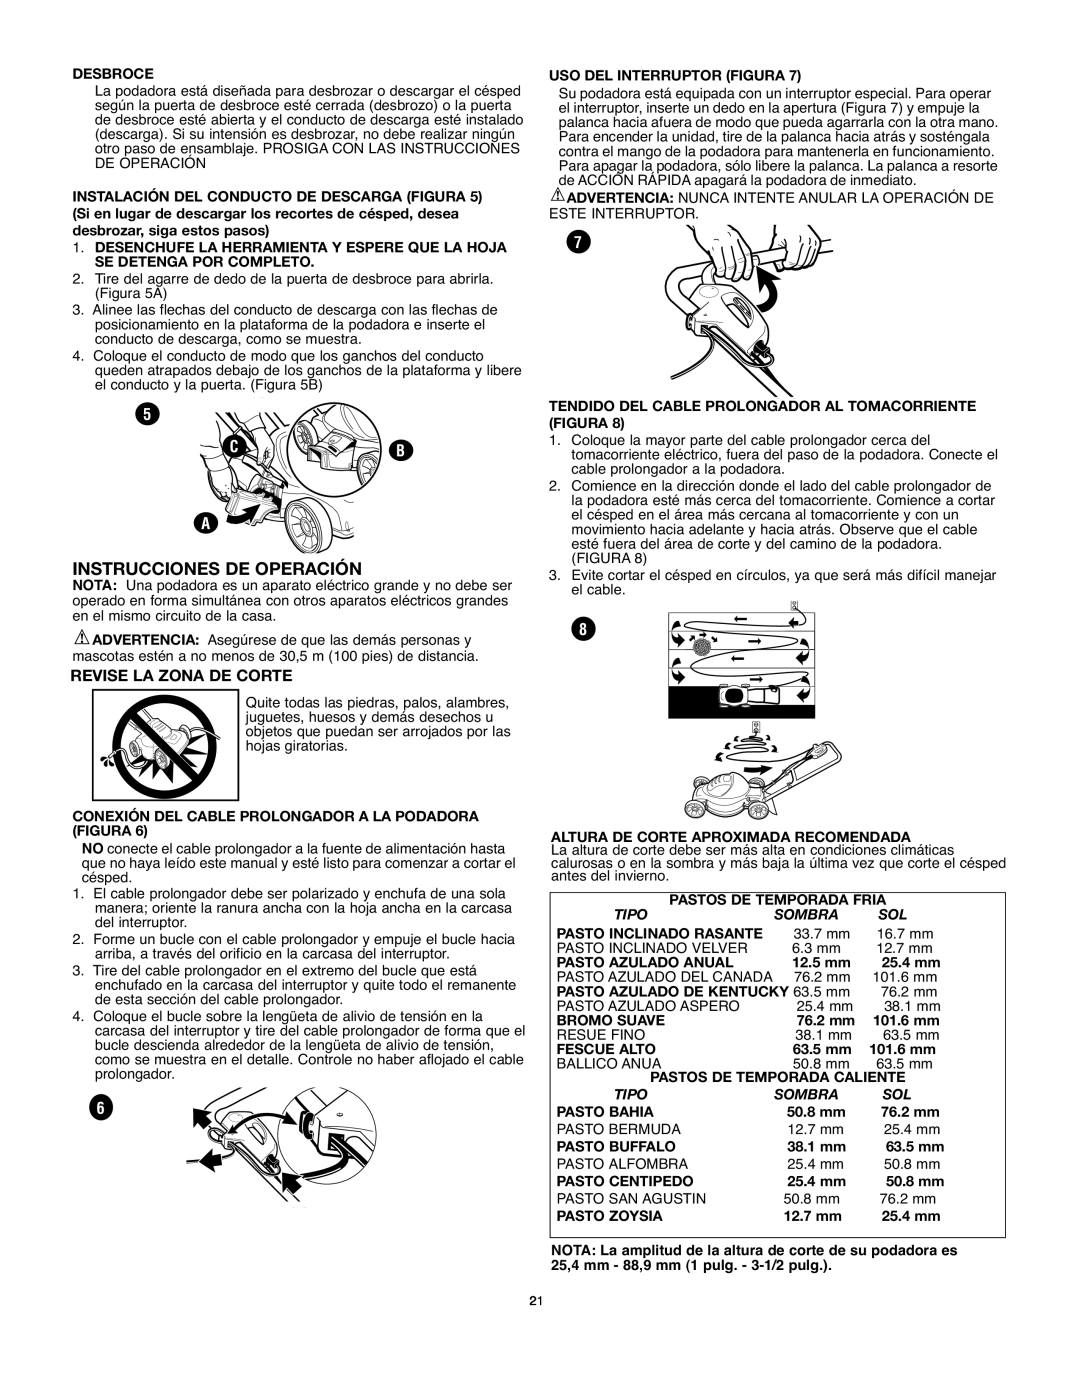 Black & Decker mm275 instruction manual Instrucciones De Operación, Revise La Zona De Corte, C B 